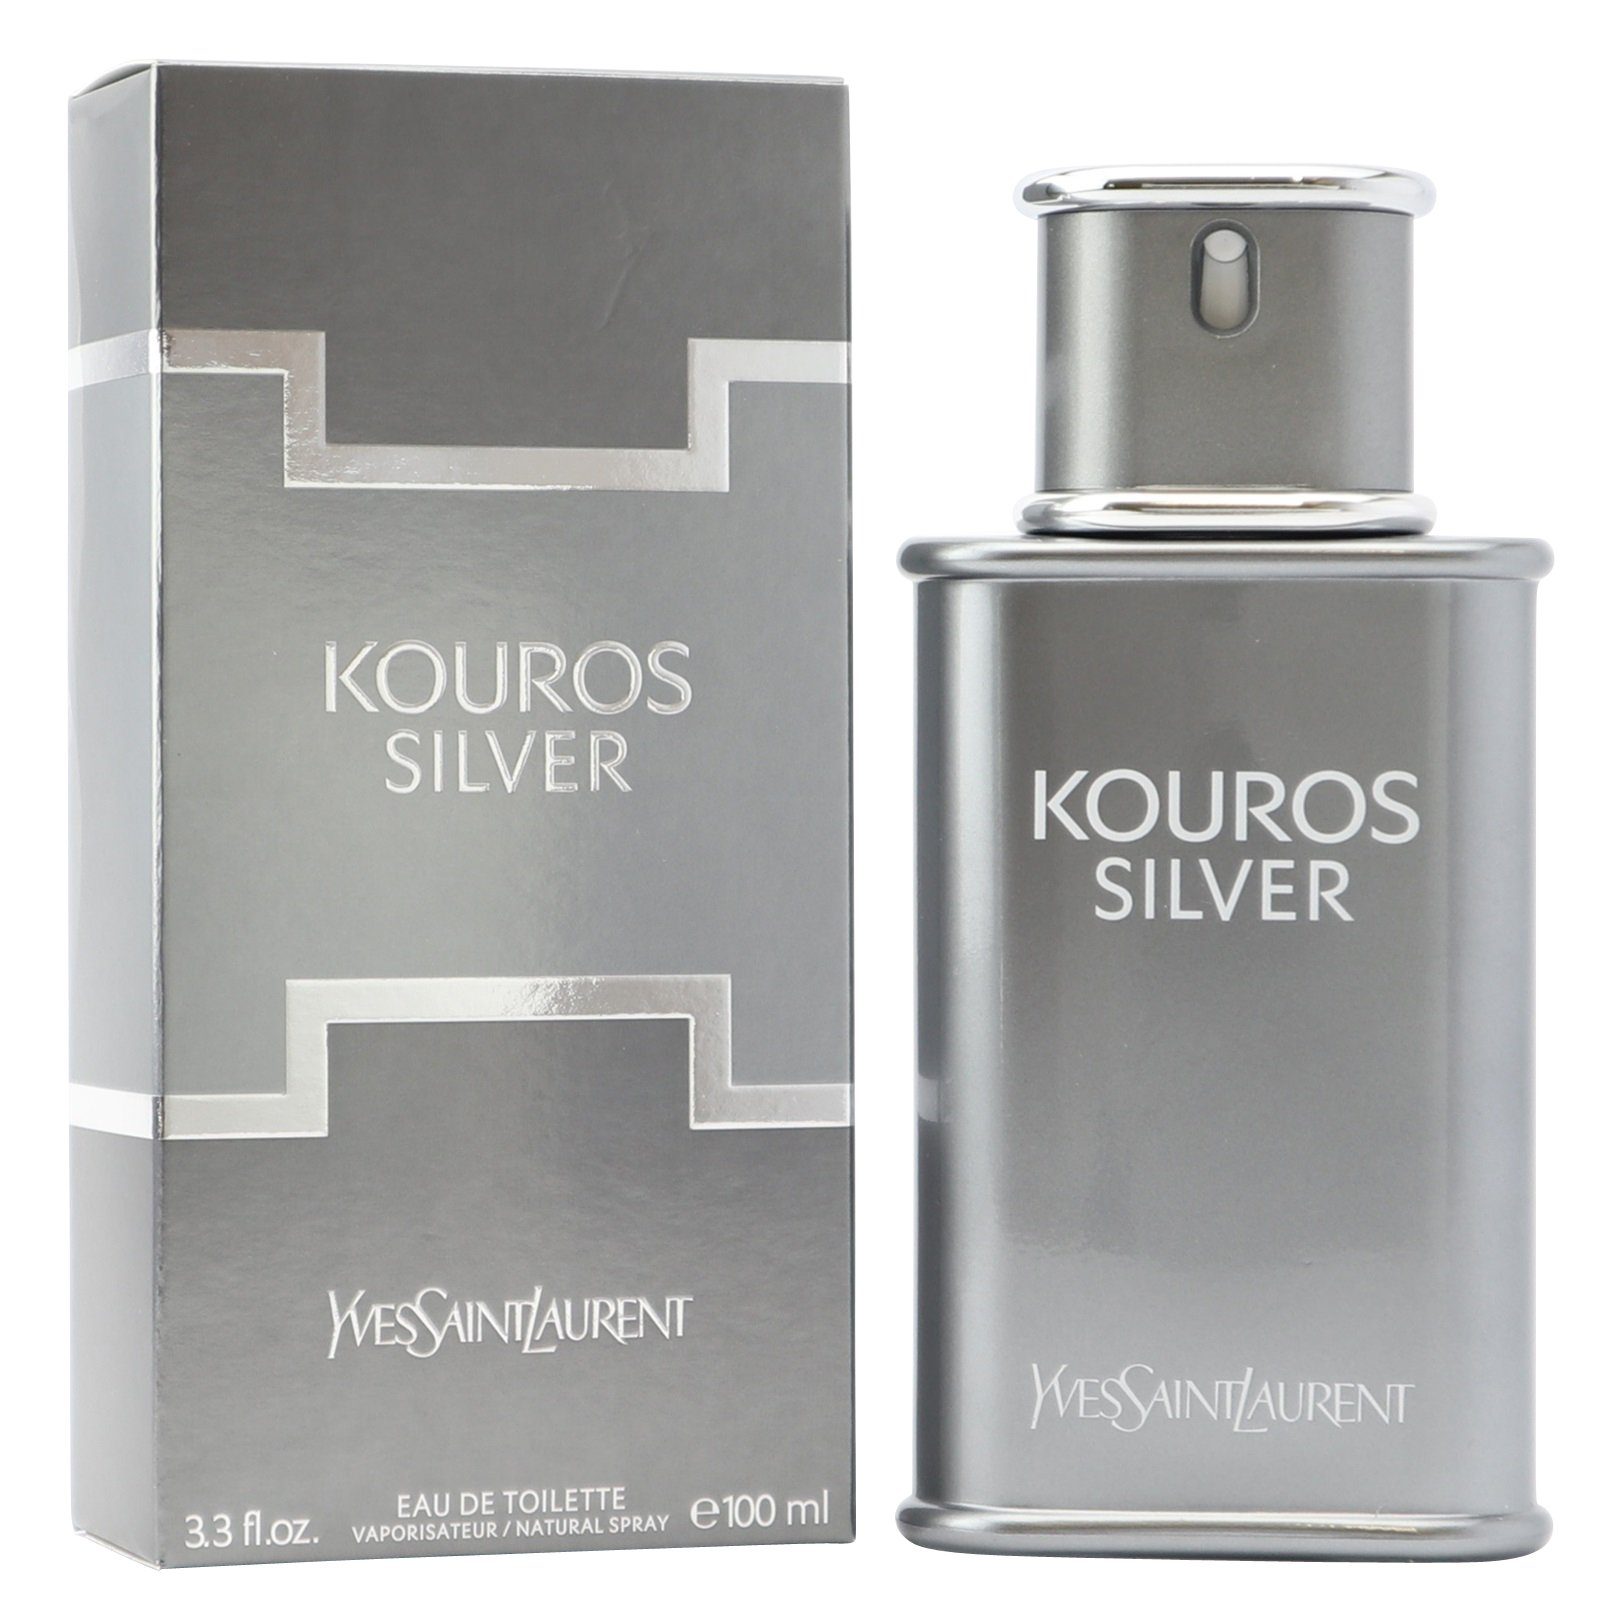 YVES SAINT LAURENT Eau de Toilette Yves Saint Laurent Kouros Silver Eau de Toilette Spray 100 ml YSL